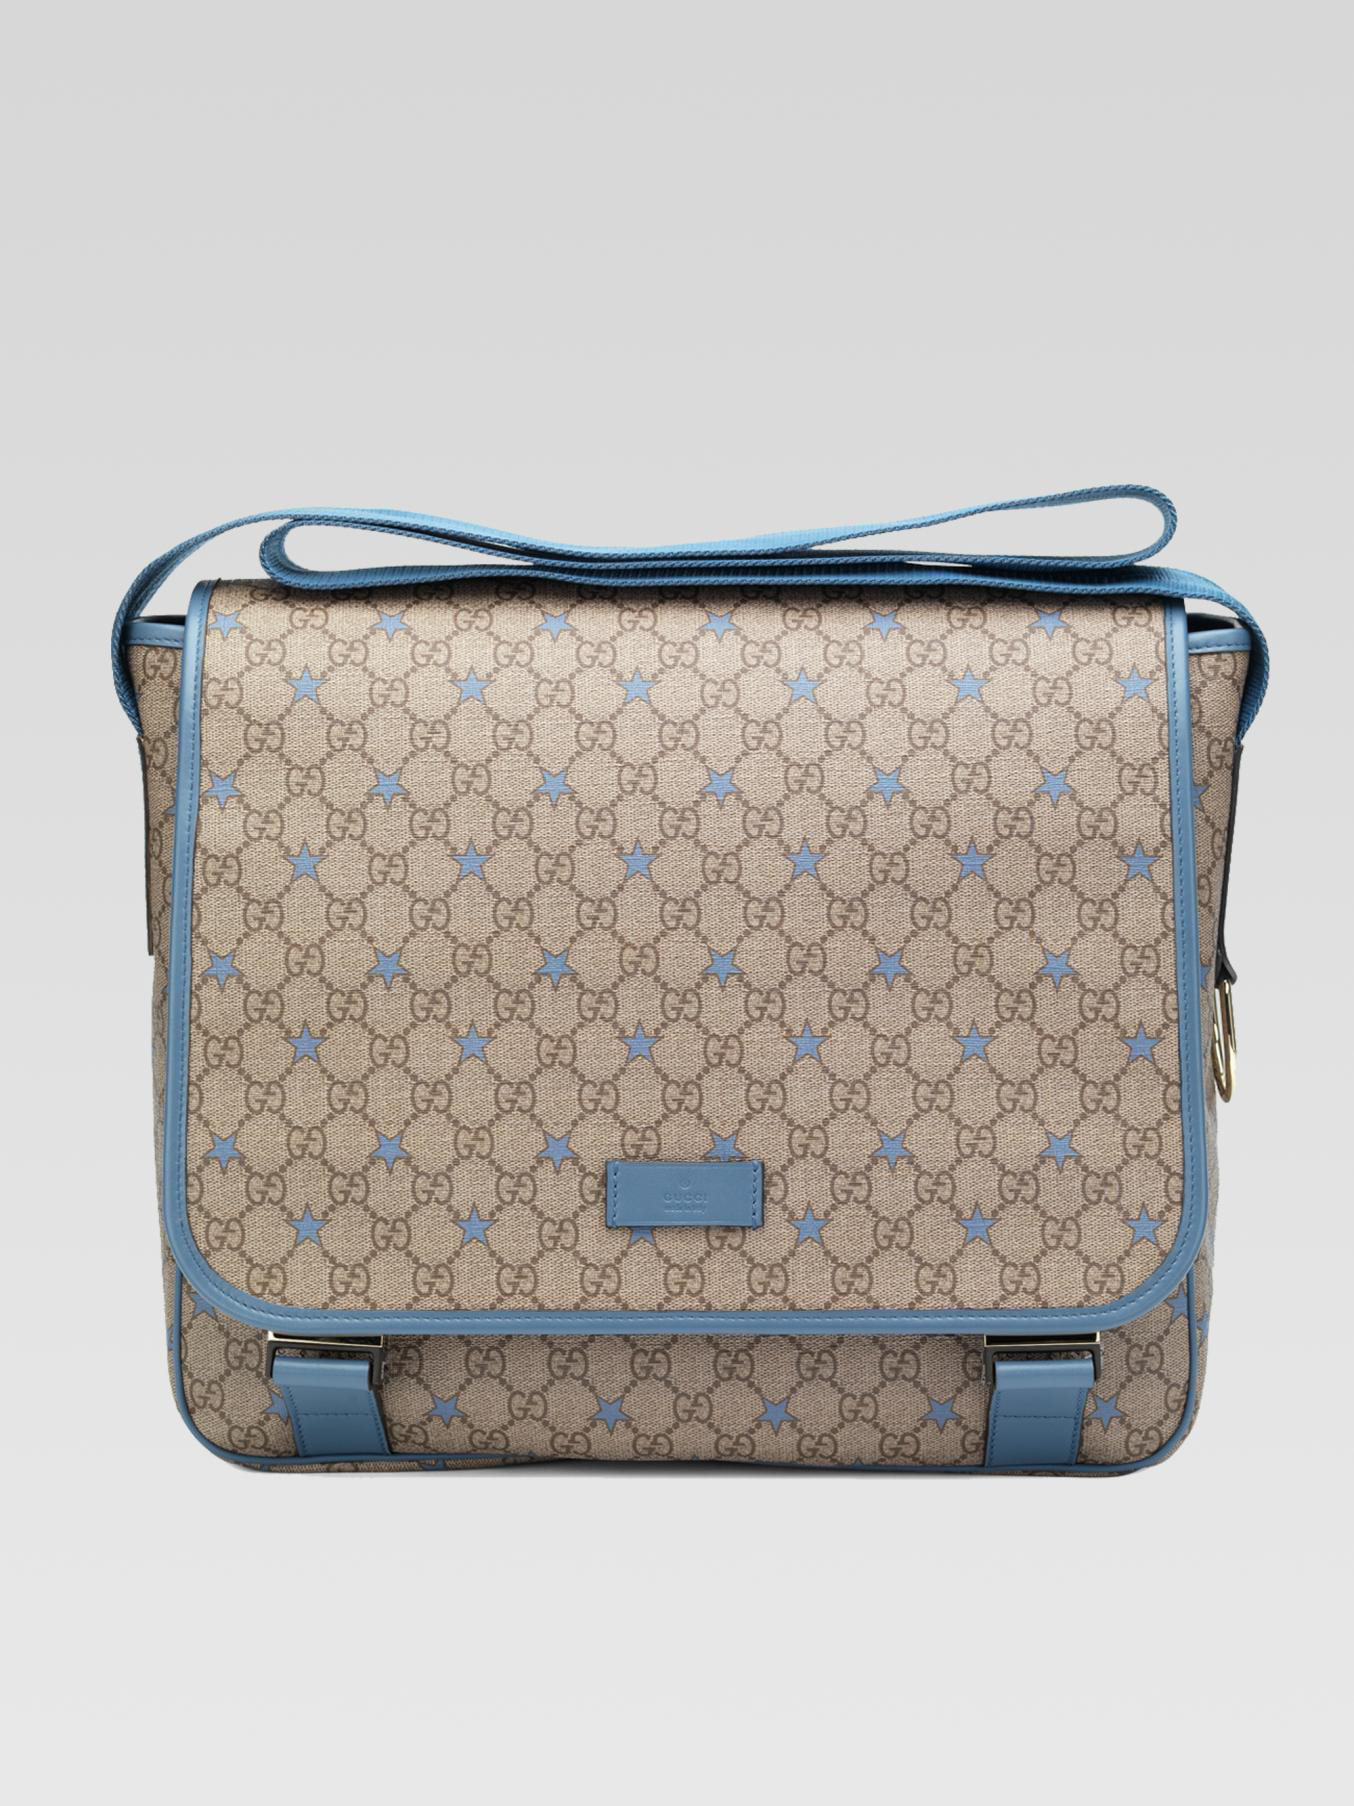 Lyst - Gucci Micro Gg Supreme Canvas Stars Diaper Bag in Blue